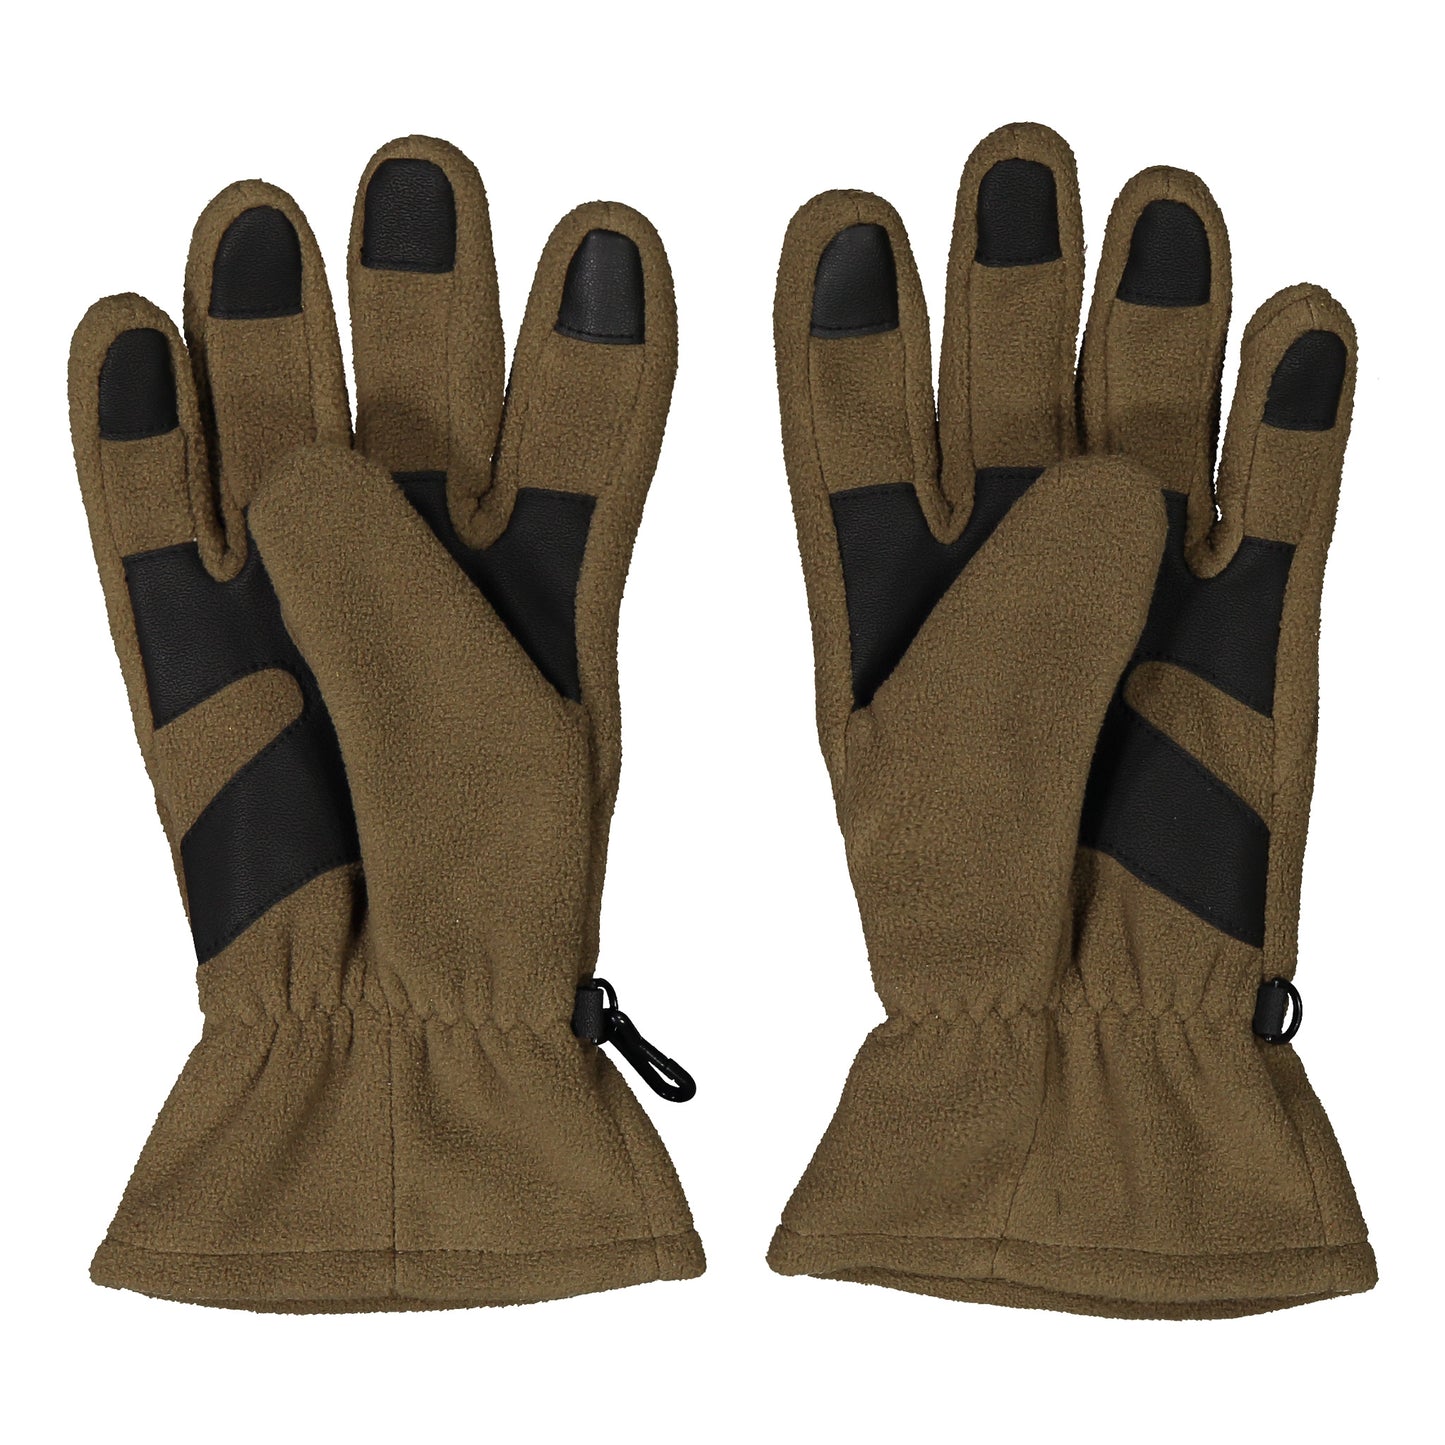 Havu gloves